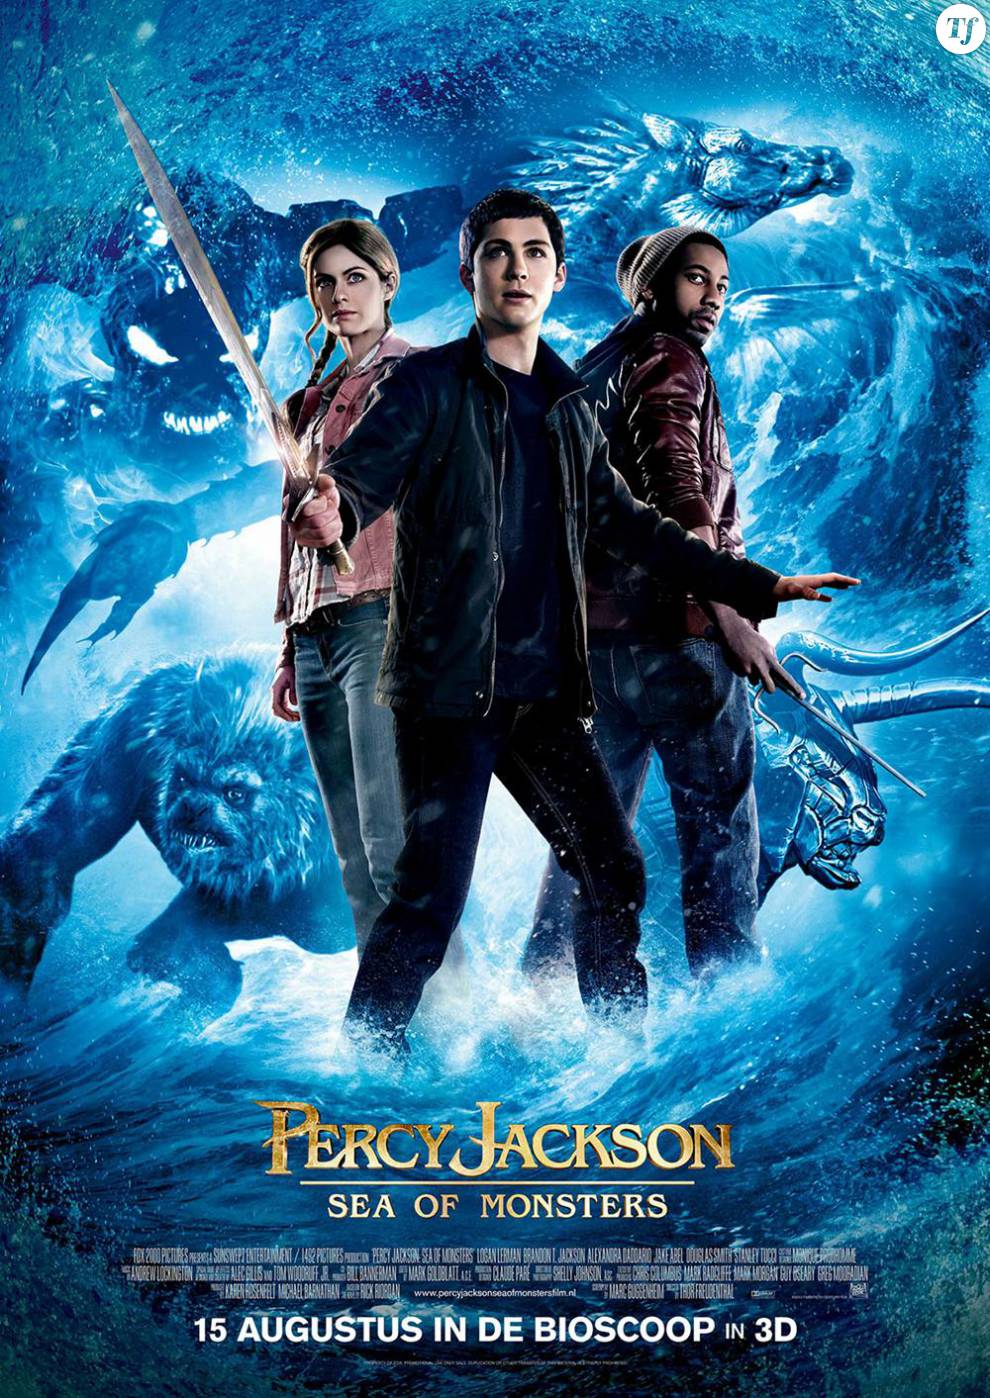 Affiche du film Percy Jackson : La mer des monstres